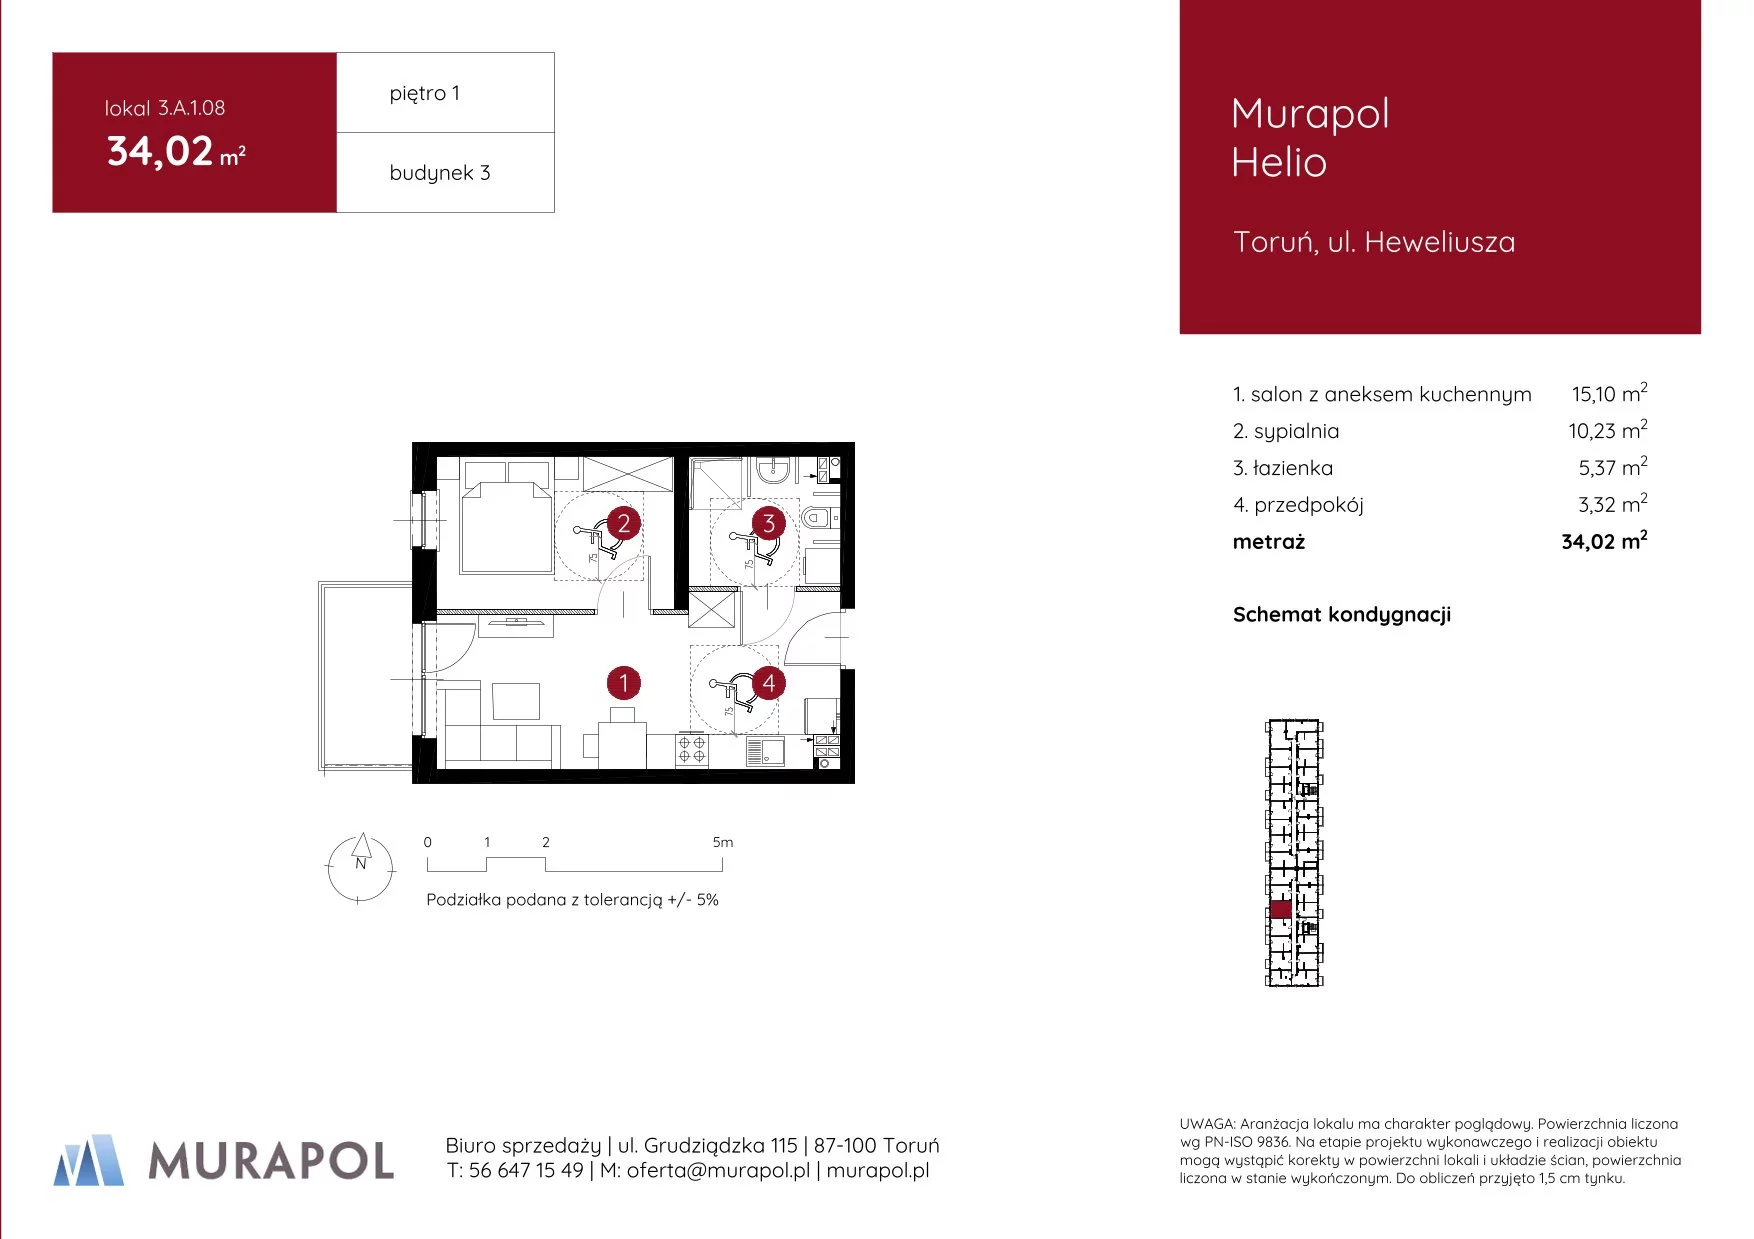 Mieszkanie 34,02 m², piętro 1, oferta nr 3.A.1.08, Murapol Helio, Toruń, Wrzosy, JAR, ul. Heweliusza